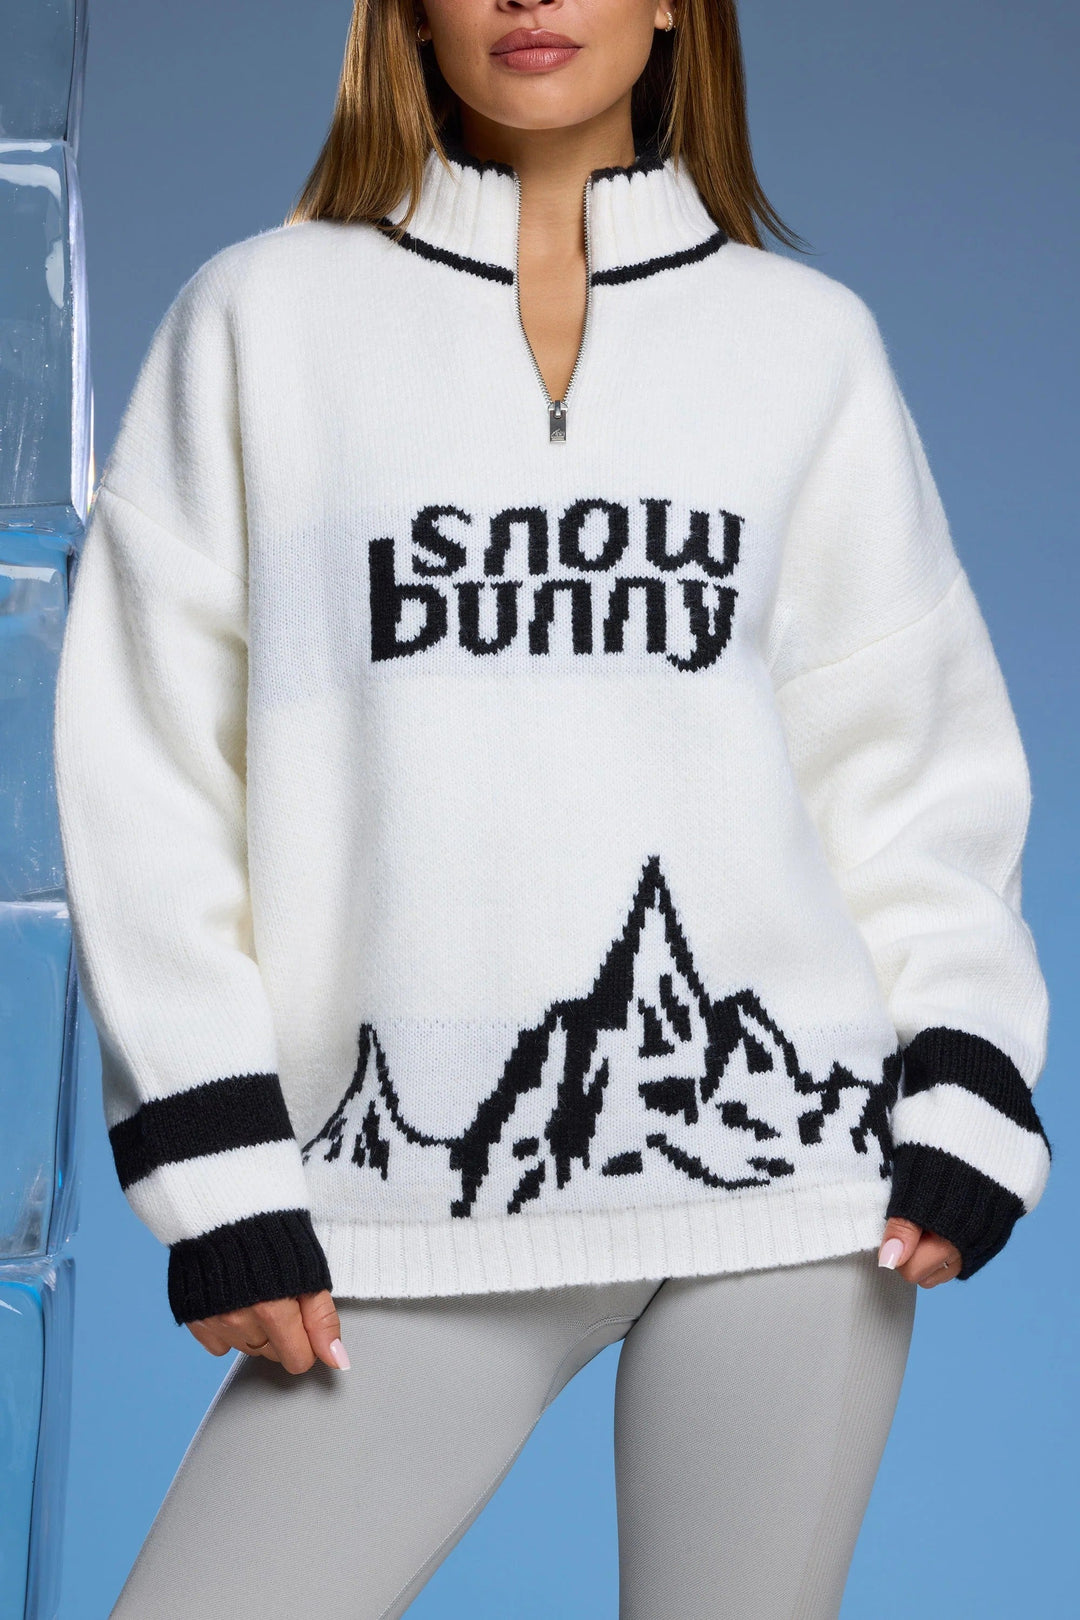 Sneeuw Bunny trui met halve rits